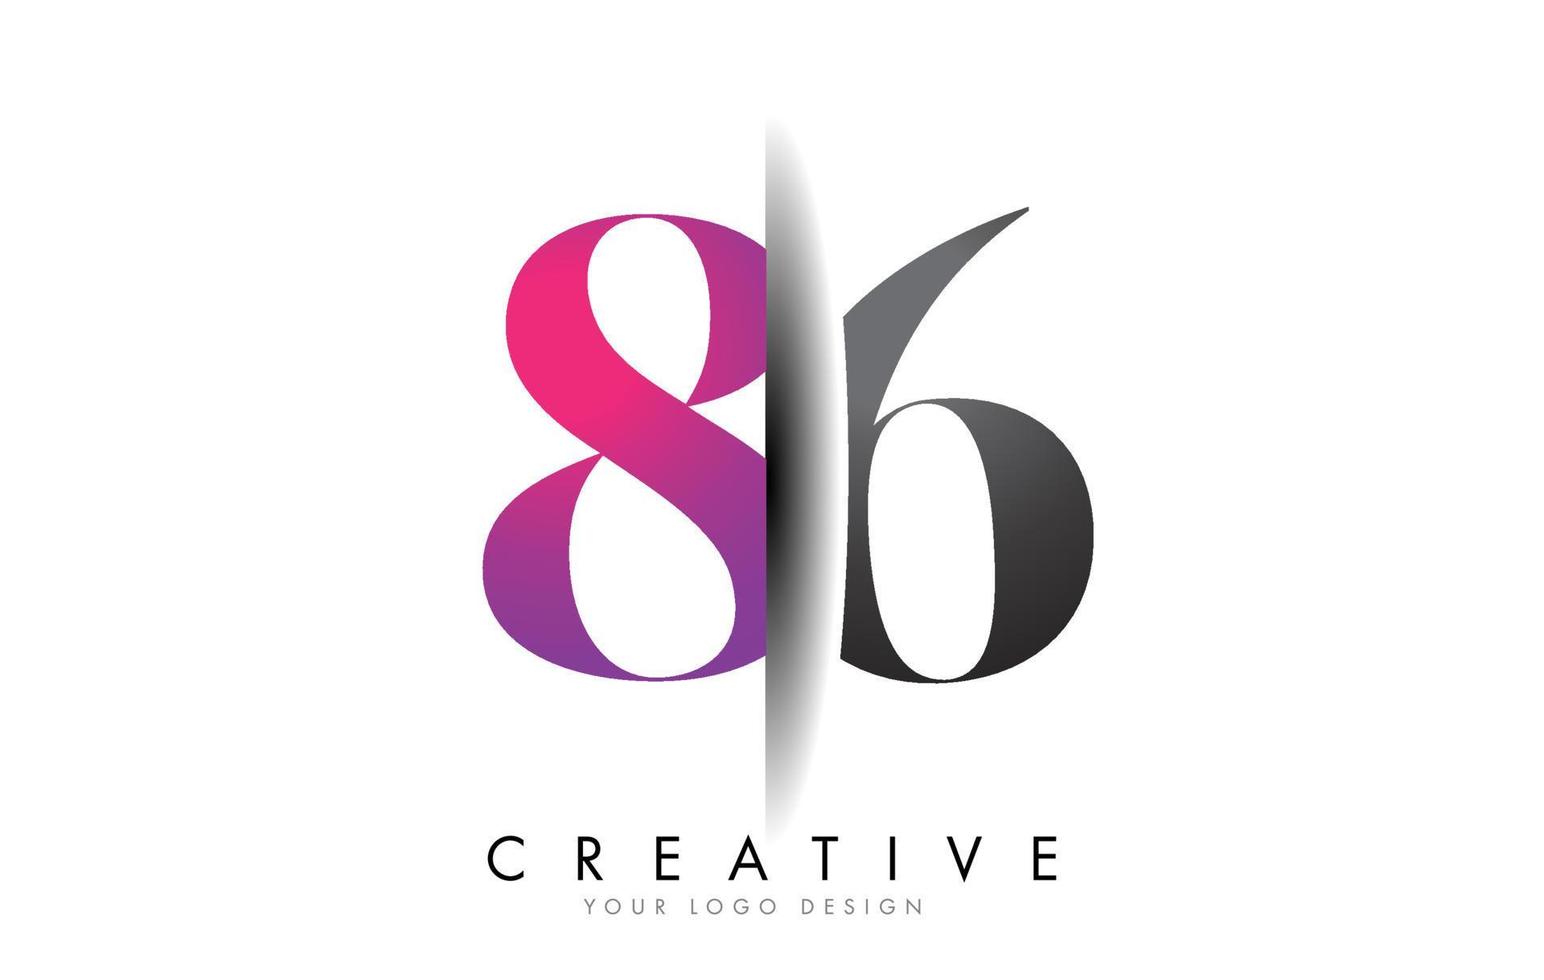 86 8 6 logo numéro gris et rose avec vecteur de coupe d'ombre créative.